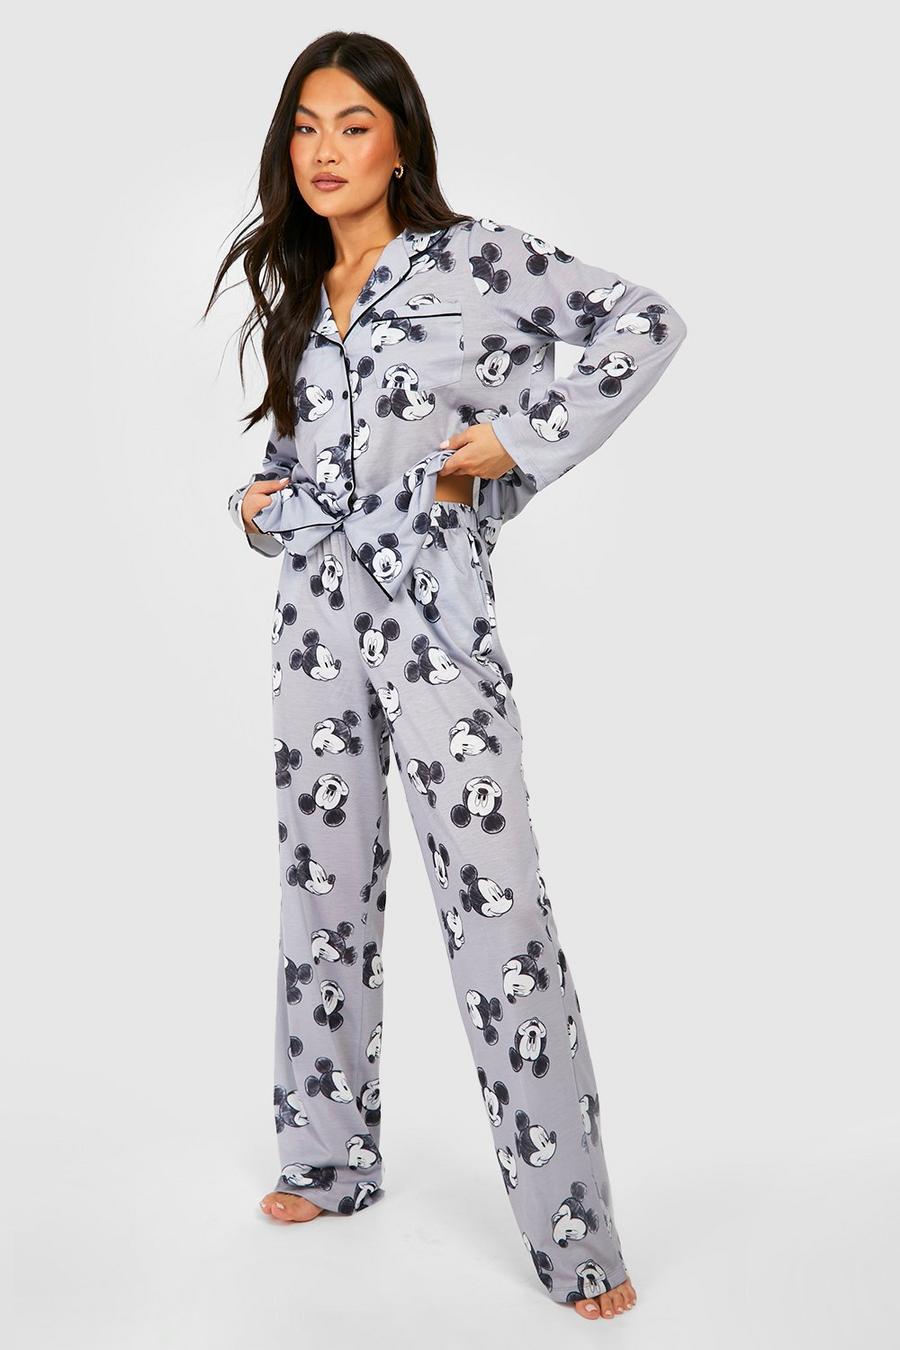 Pijama de Disney con pantalón largo, botones y estampado de Mickey Mouse, Grey image number 1